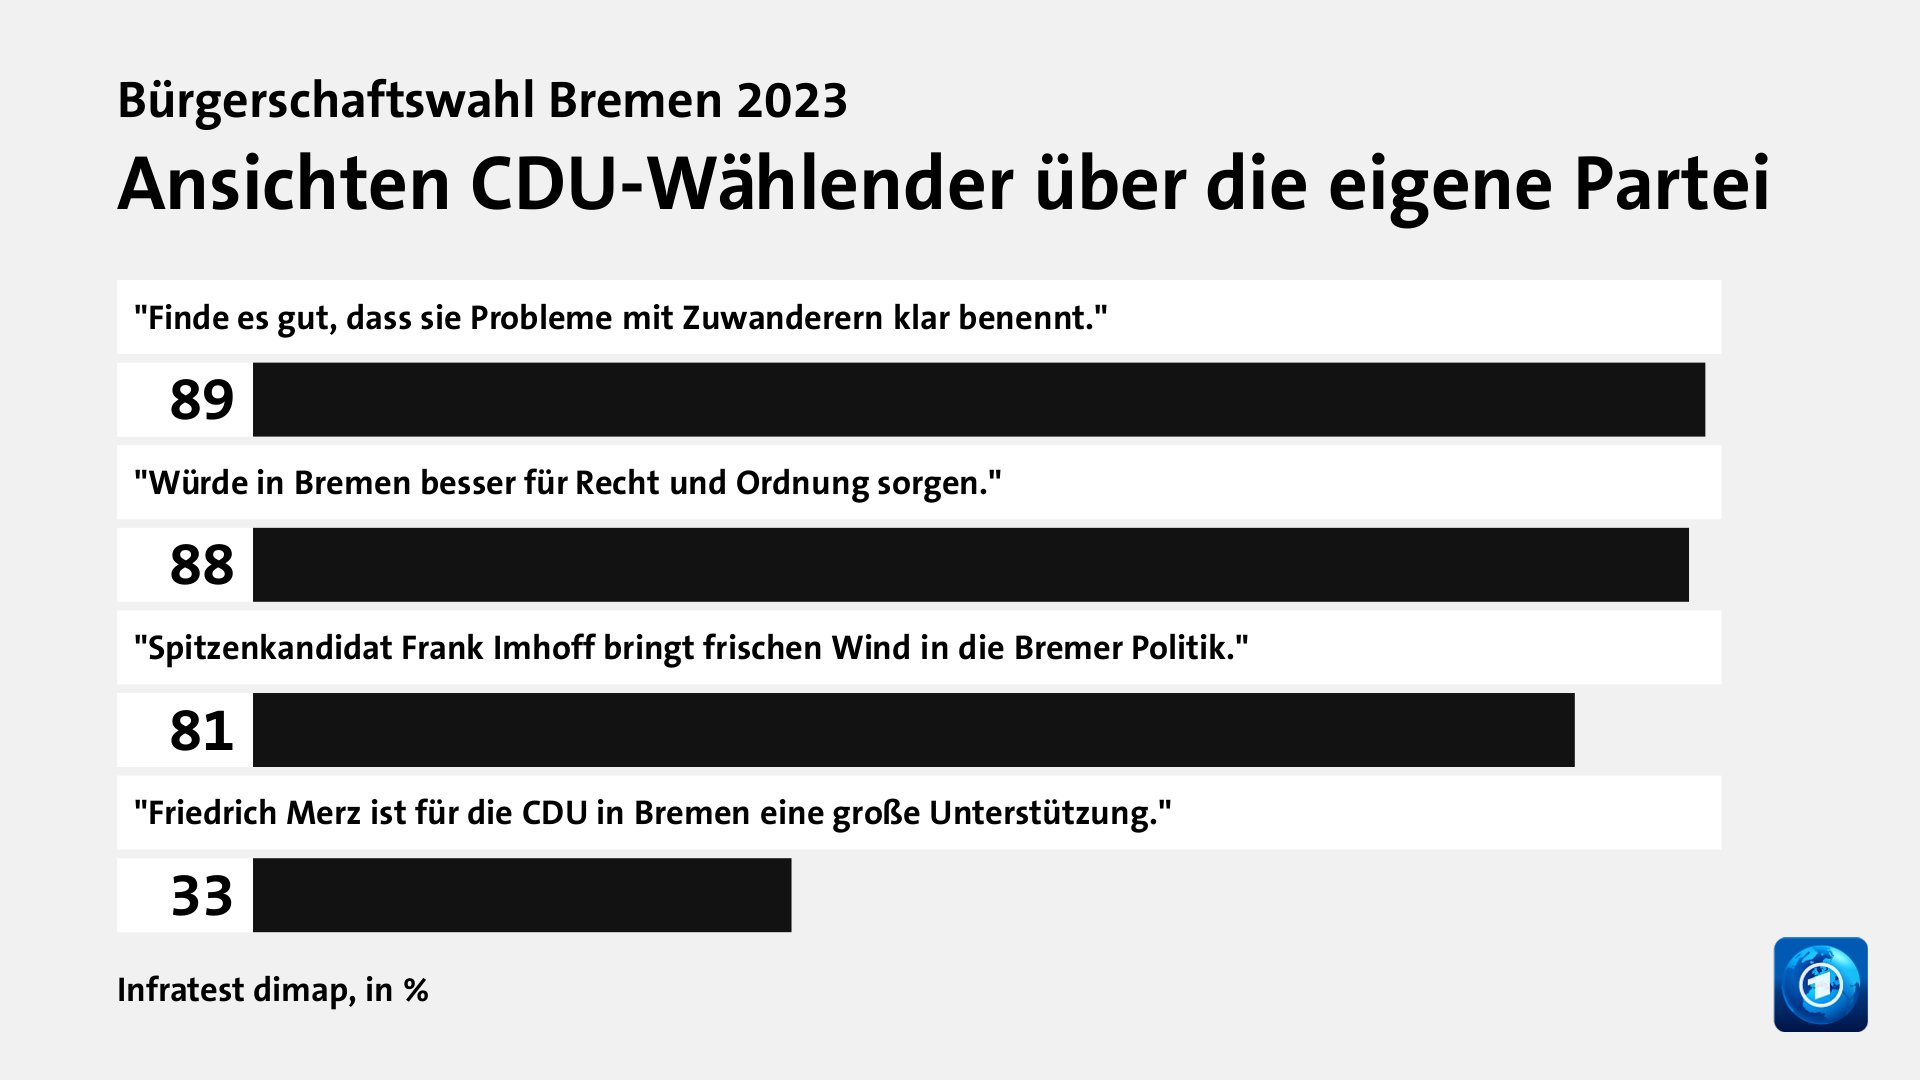 Ansichten CDU-Wählender über die eigene Partei, in %: 